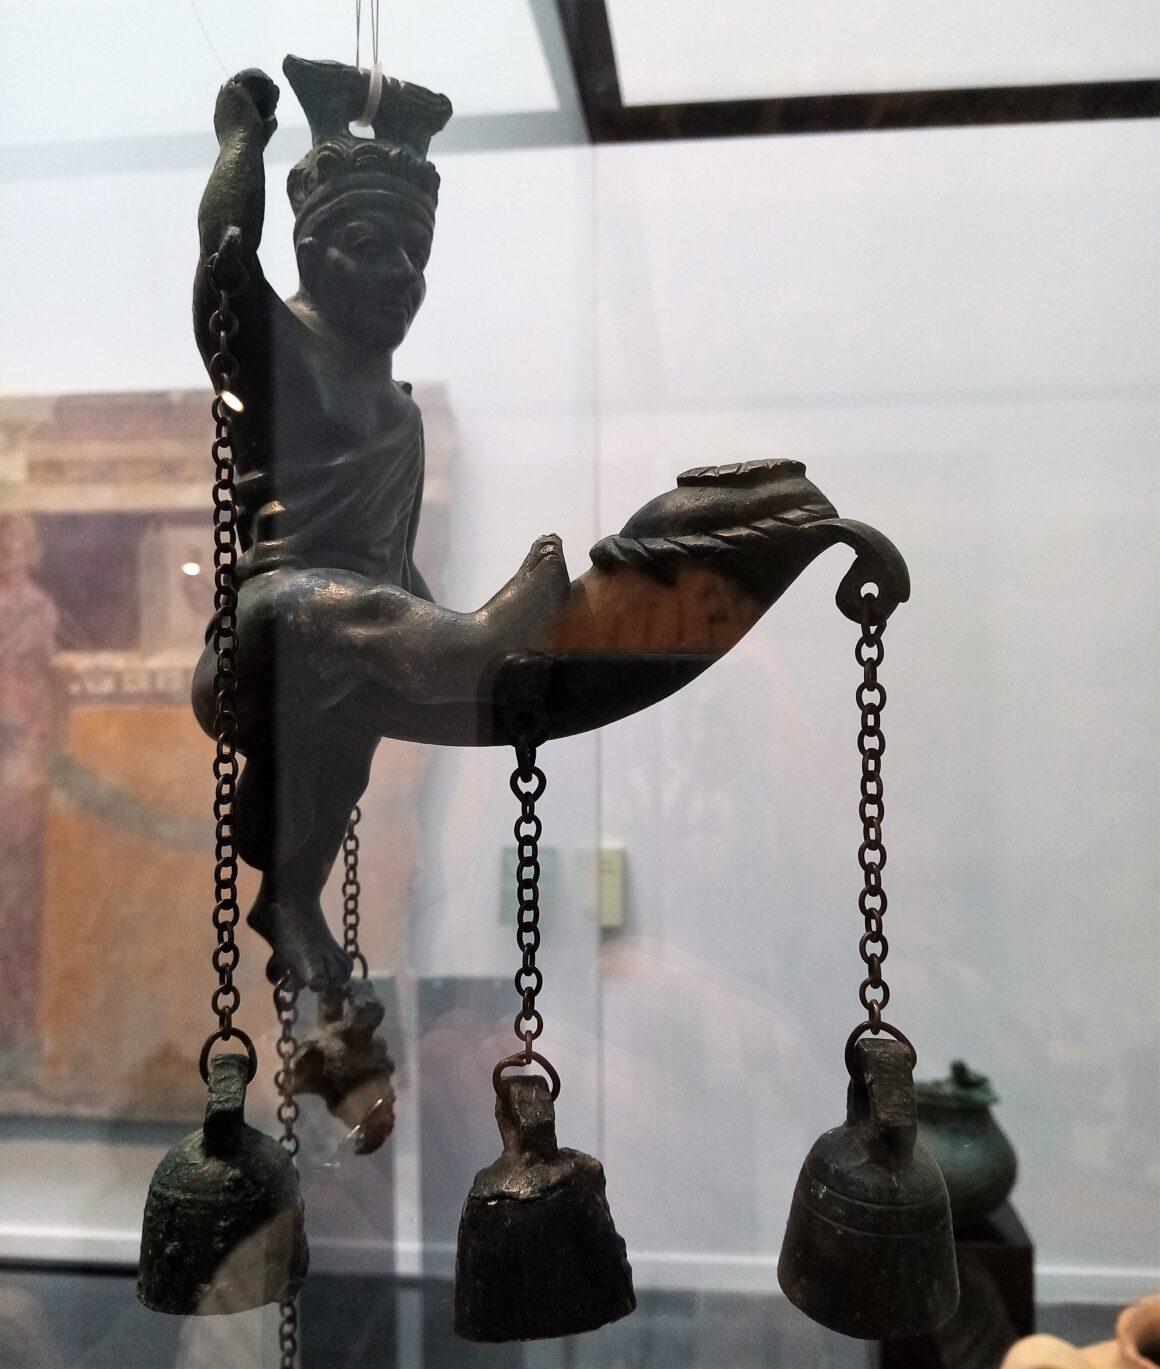 Tintinnabula exhibited in the Pompeii Antiquarium